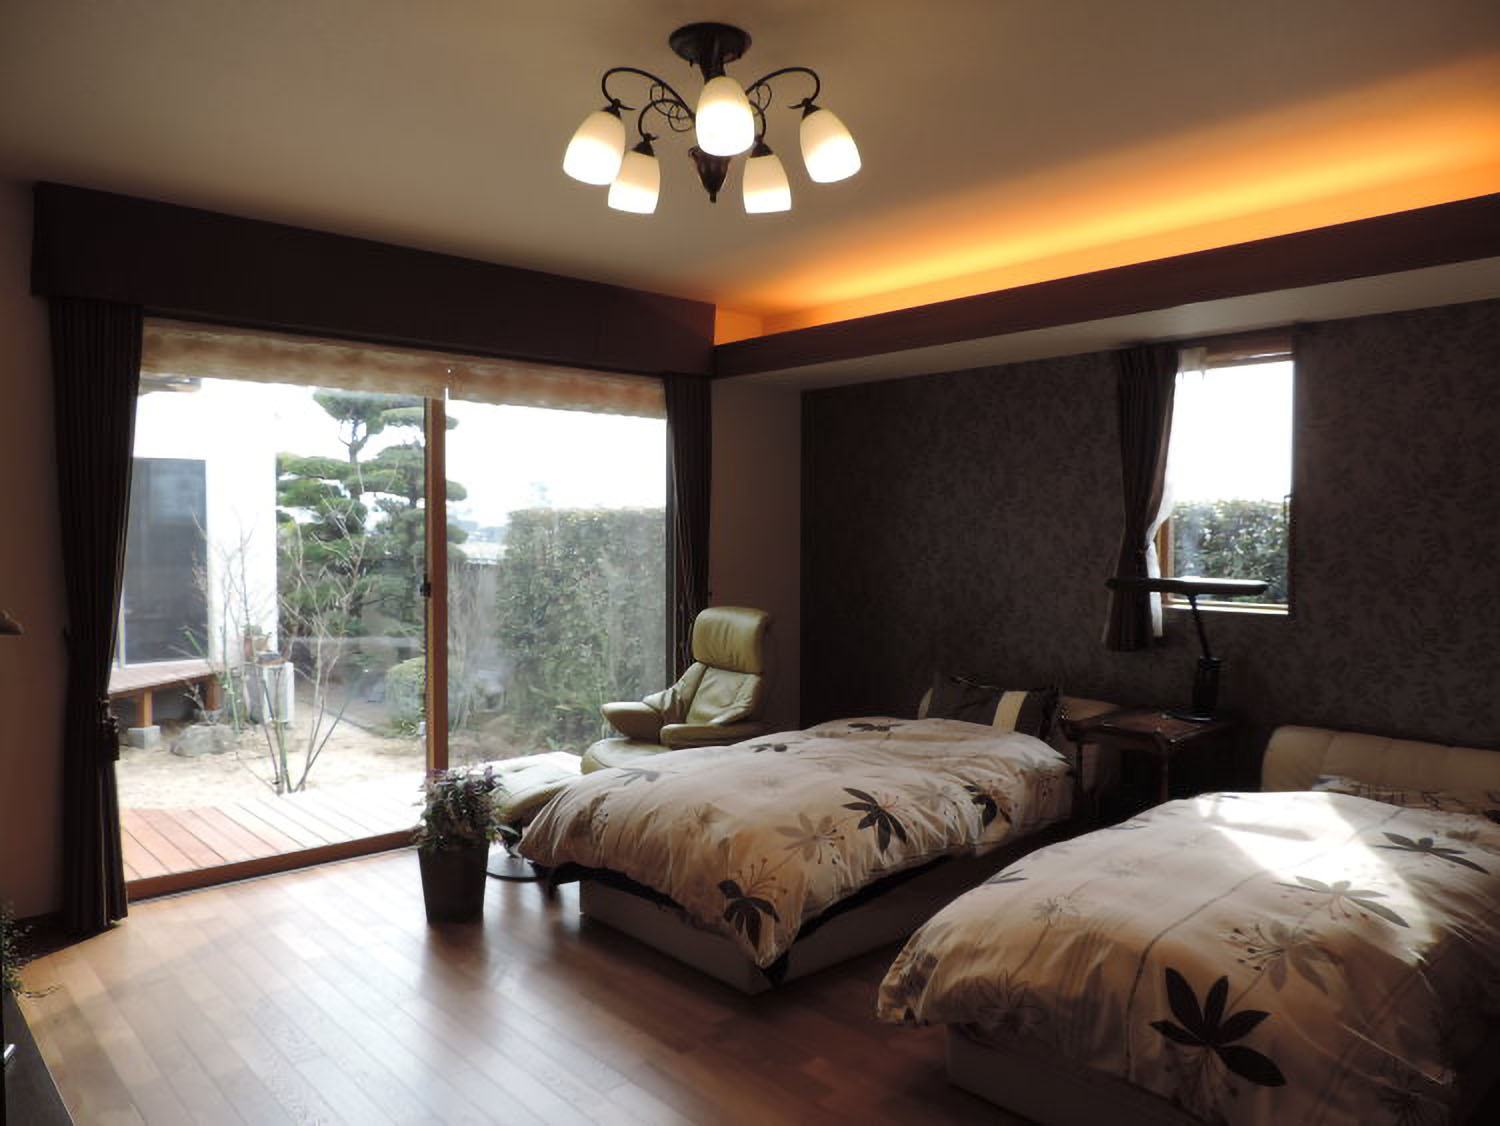 洋風ナチュラルガーデンに似合ったクラシックデザインの主寝室